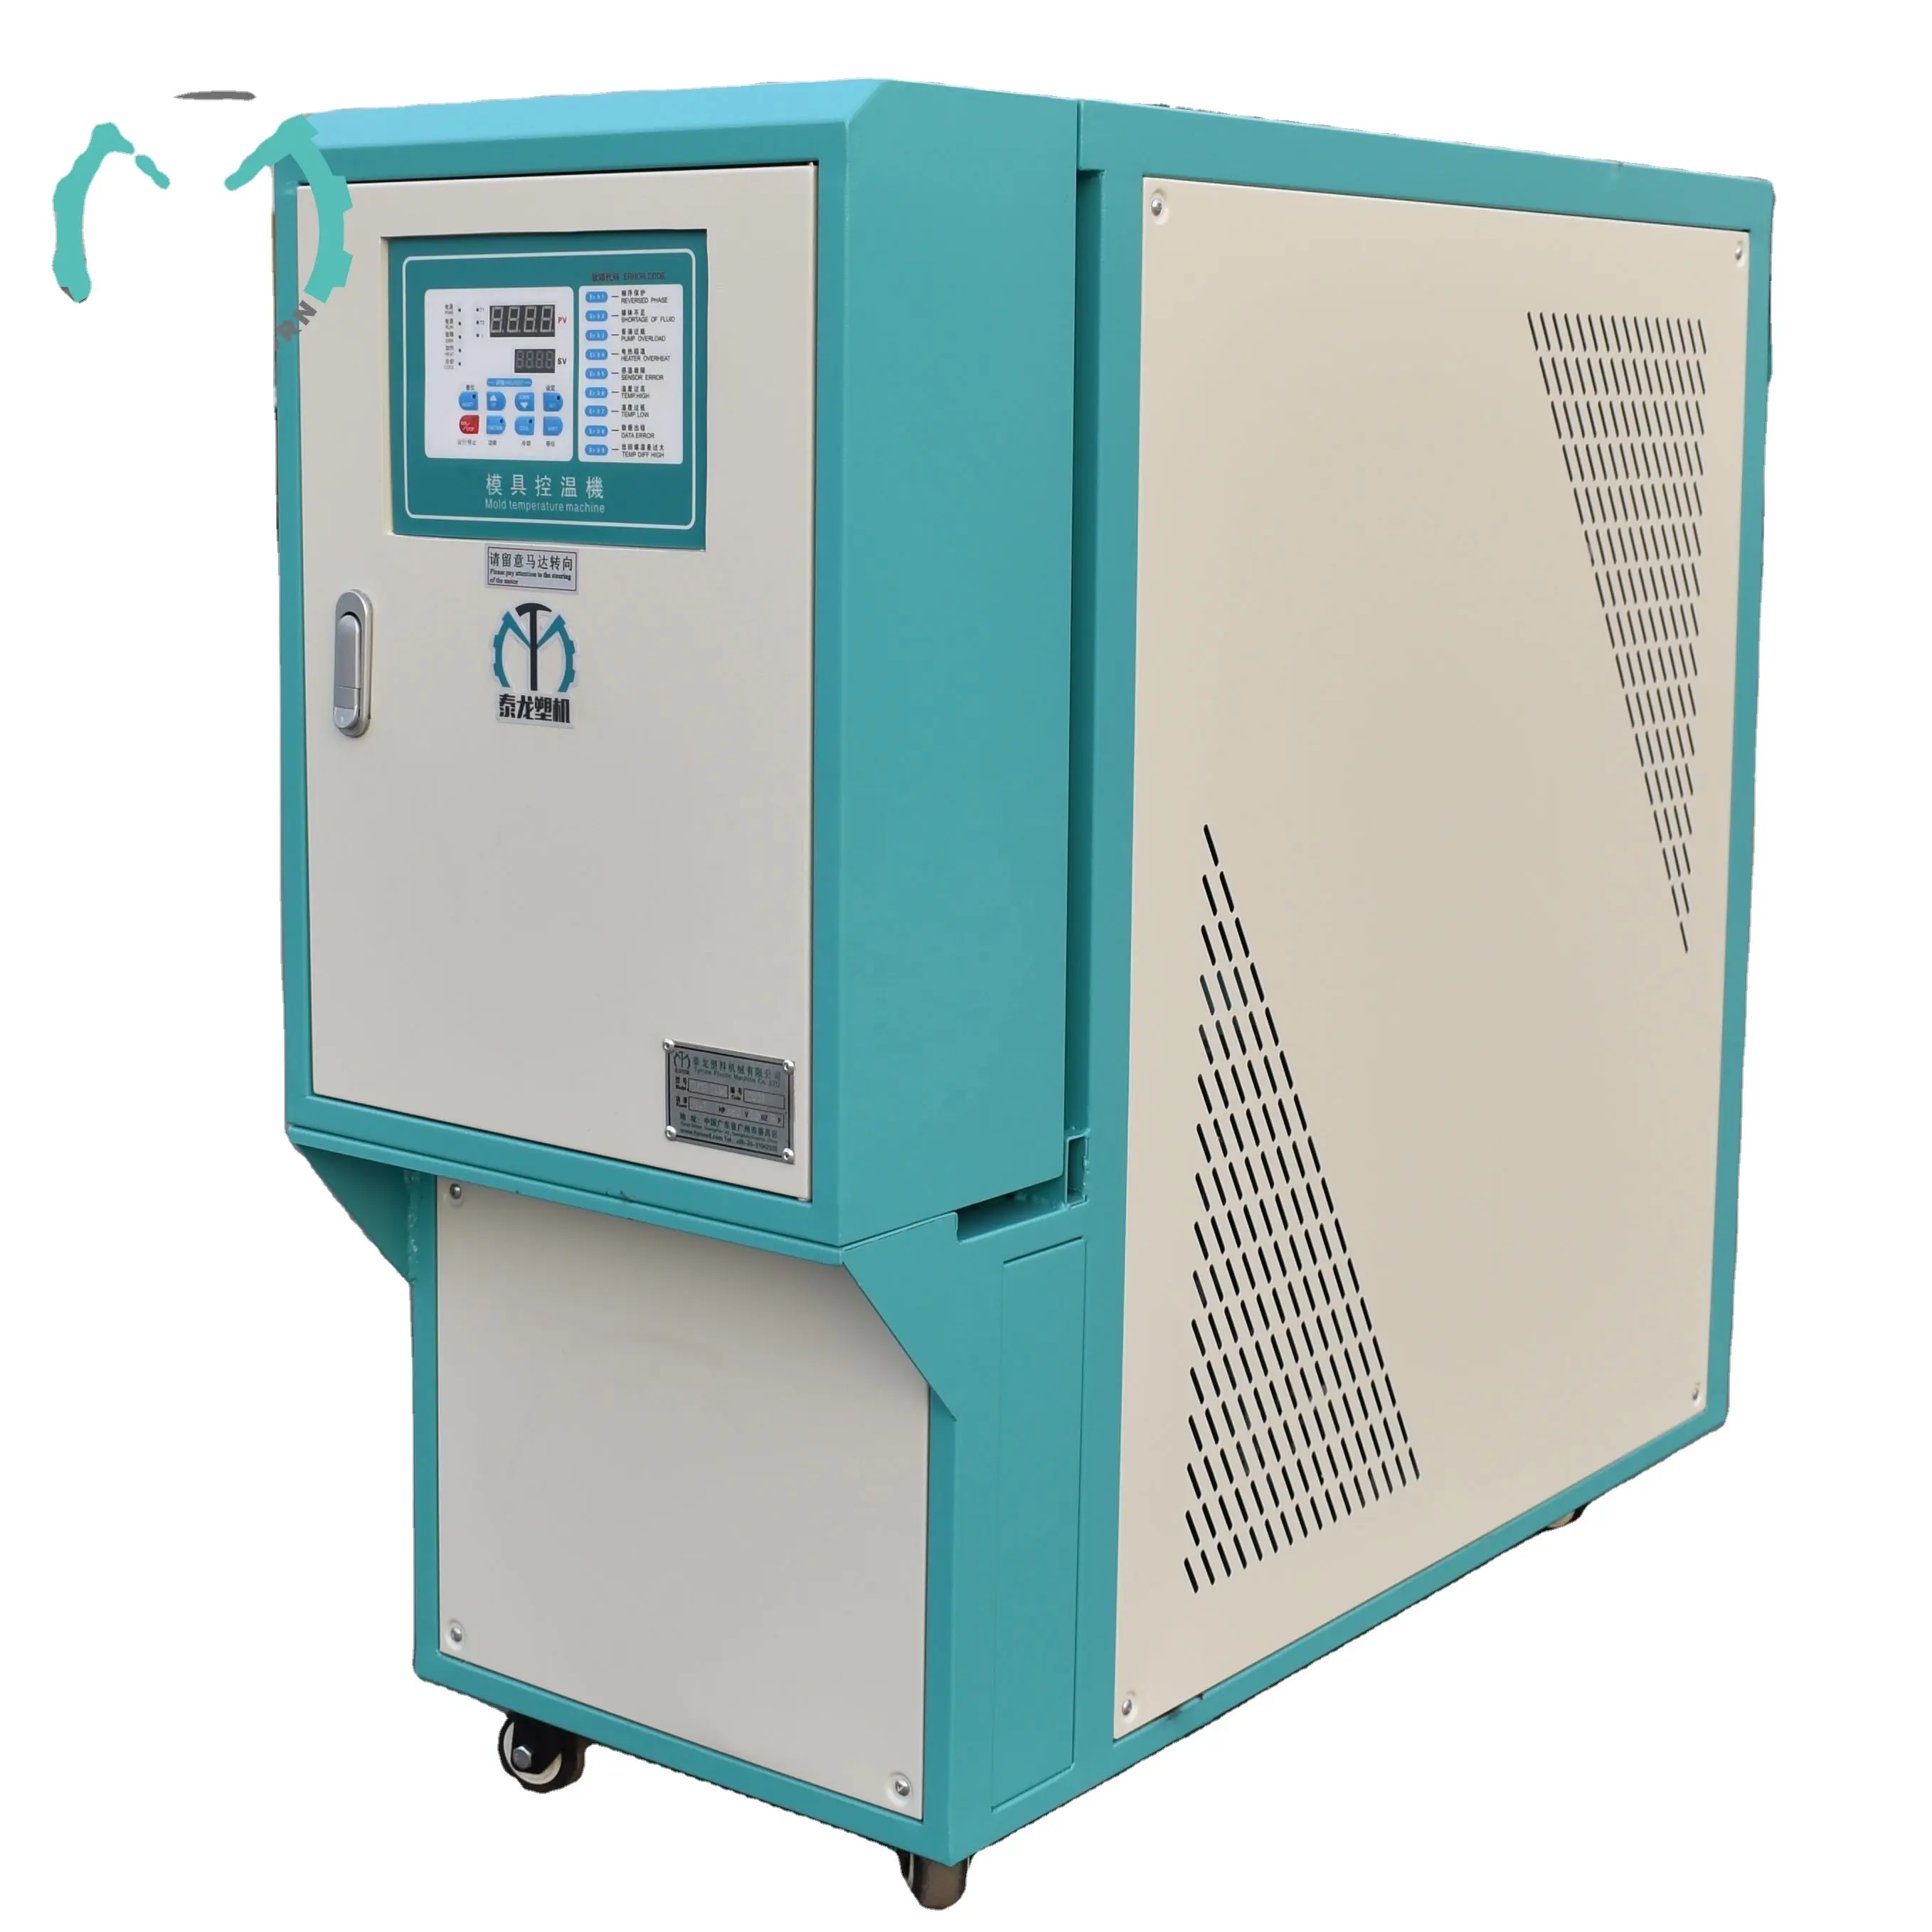 Üretim endüstriyel Chiller hava soğutmalı Chiller enjeksiyon kalıbı soğutma makinesi 5HP HAVA SOĞUTUCU Chiller makinesi